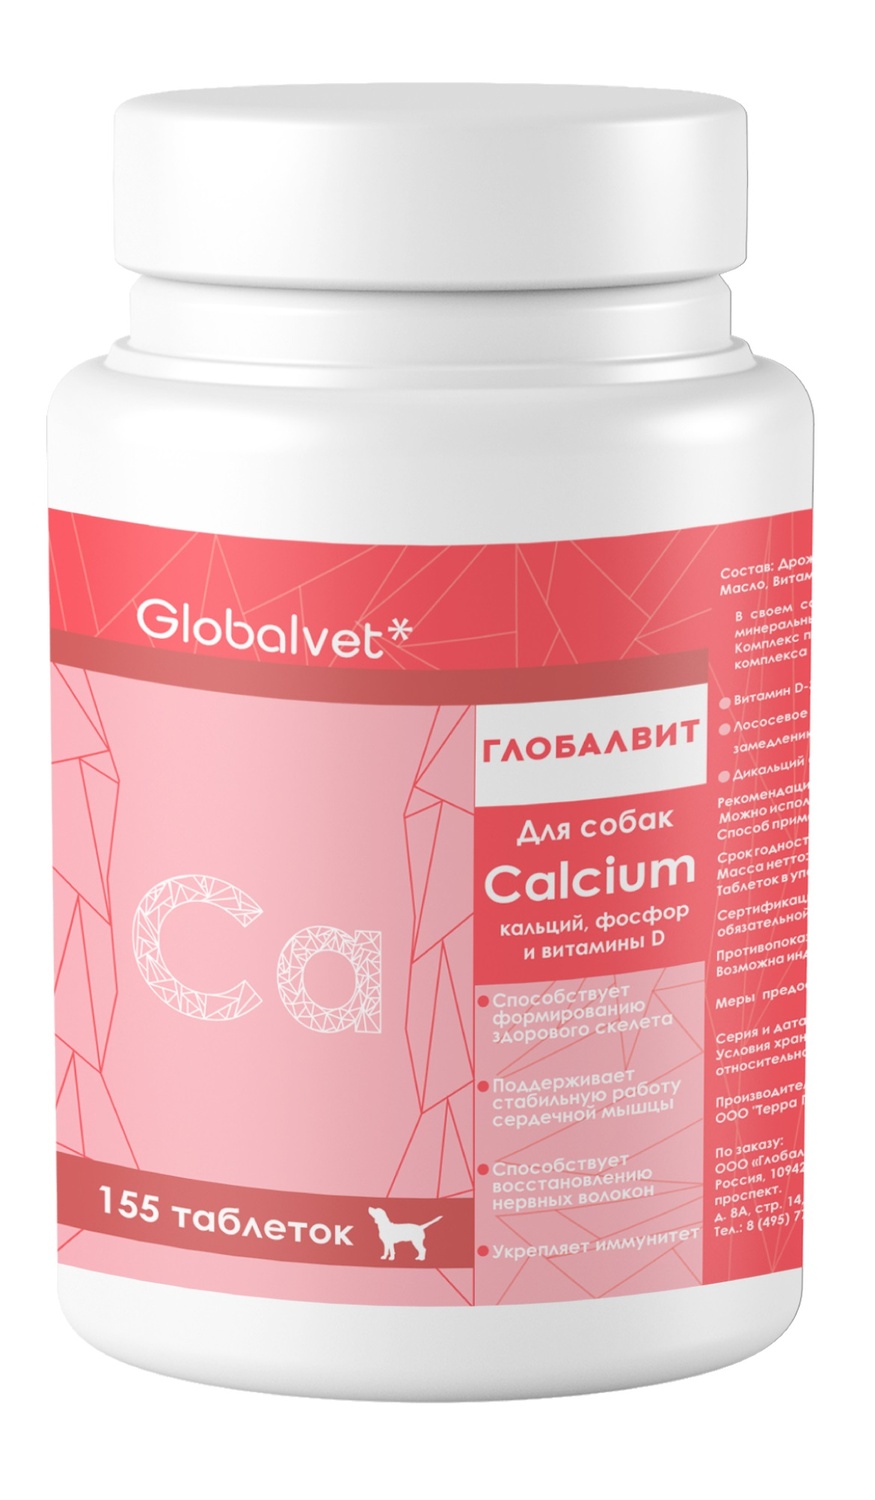 Глобалвит Calcium витаминный комплекс Кальций/витамин Д/Фосфор для собак 155 таб